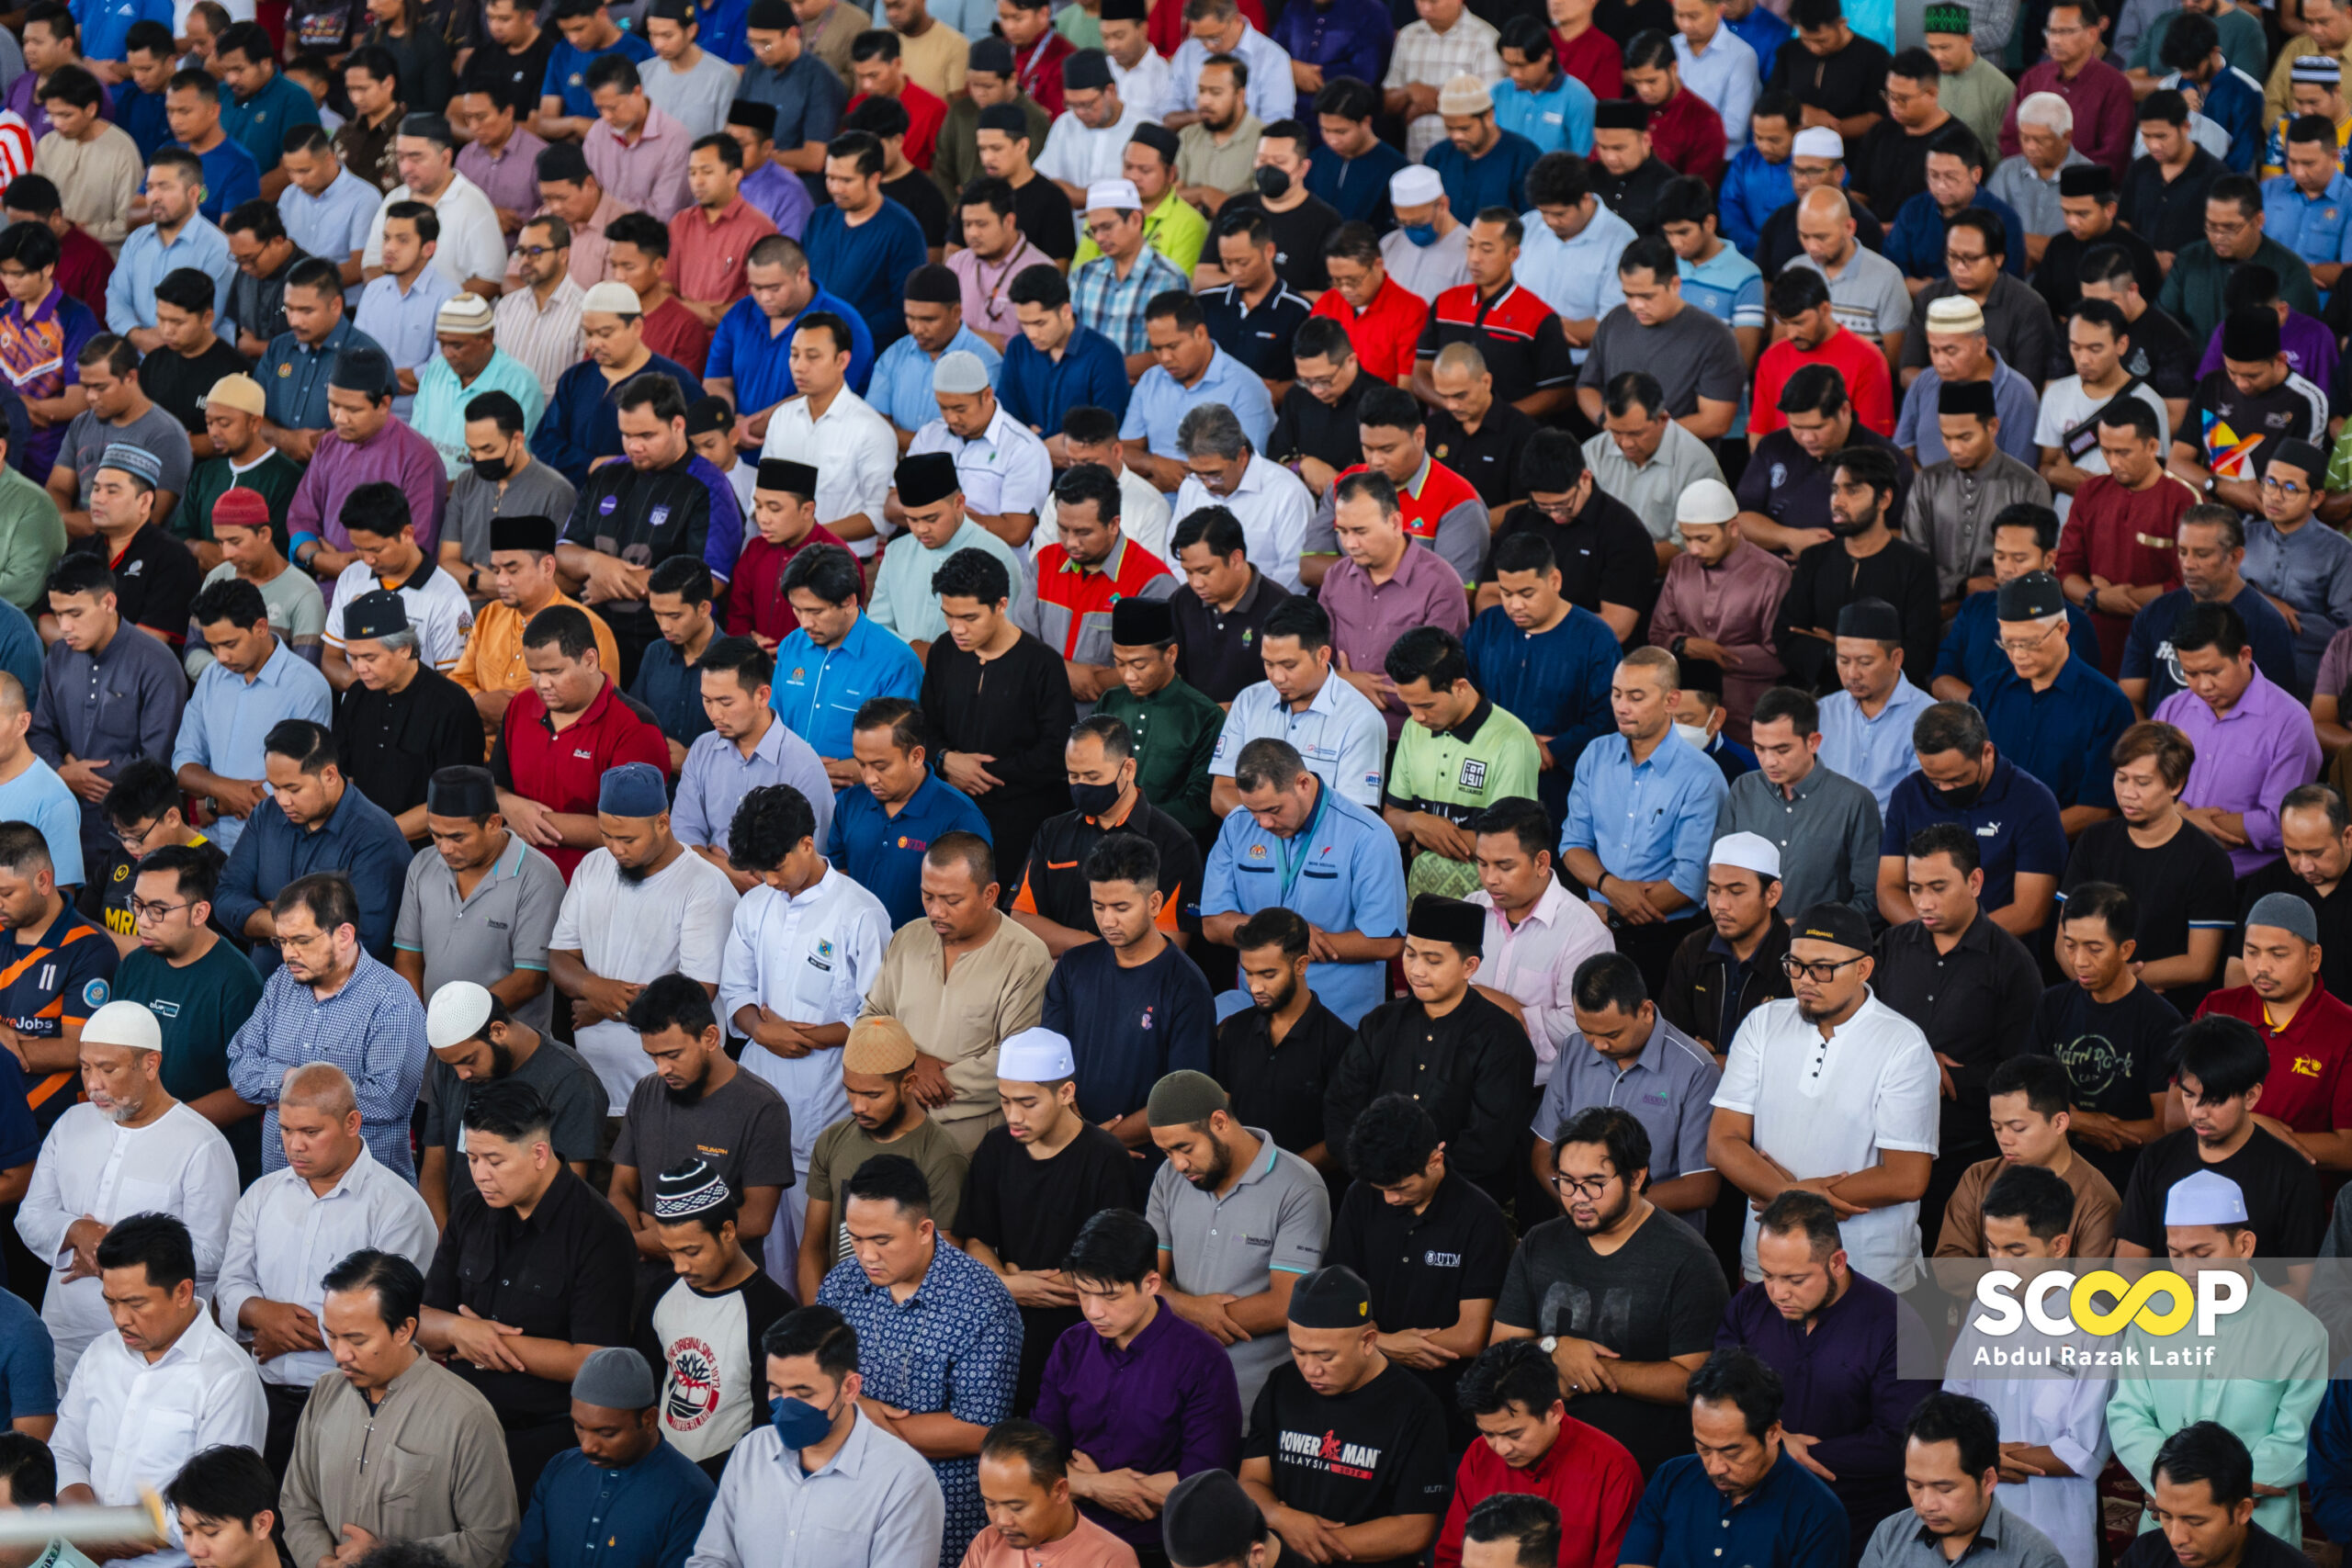 Jemaah tidak rapat saf satu kejahilan yang merugikan: Mufti